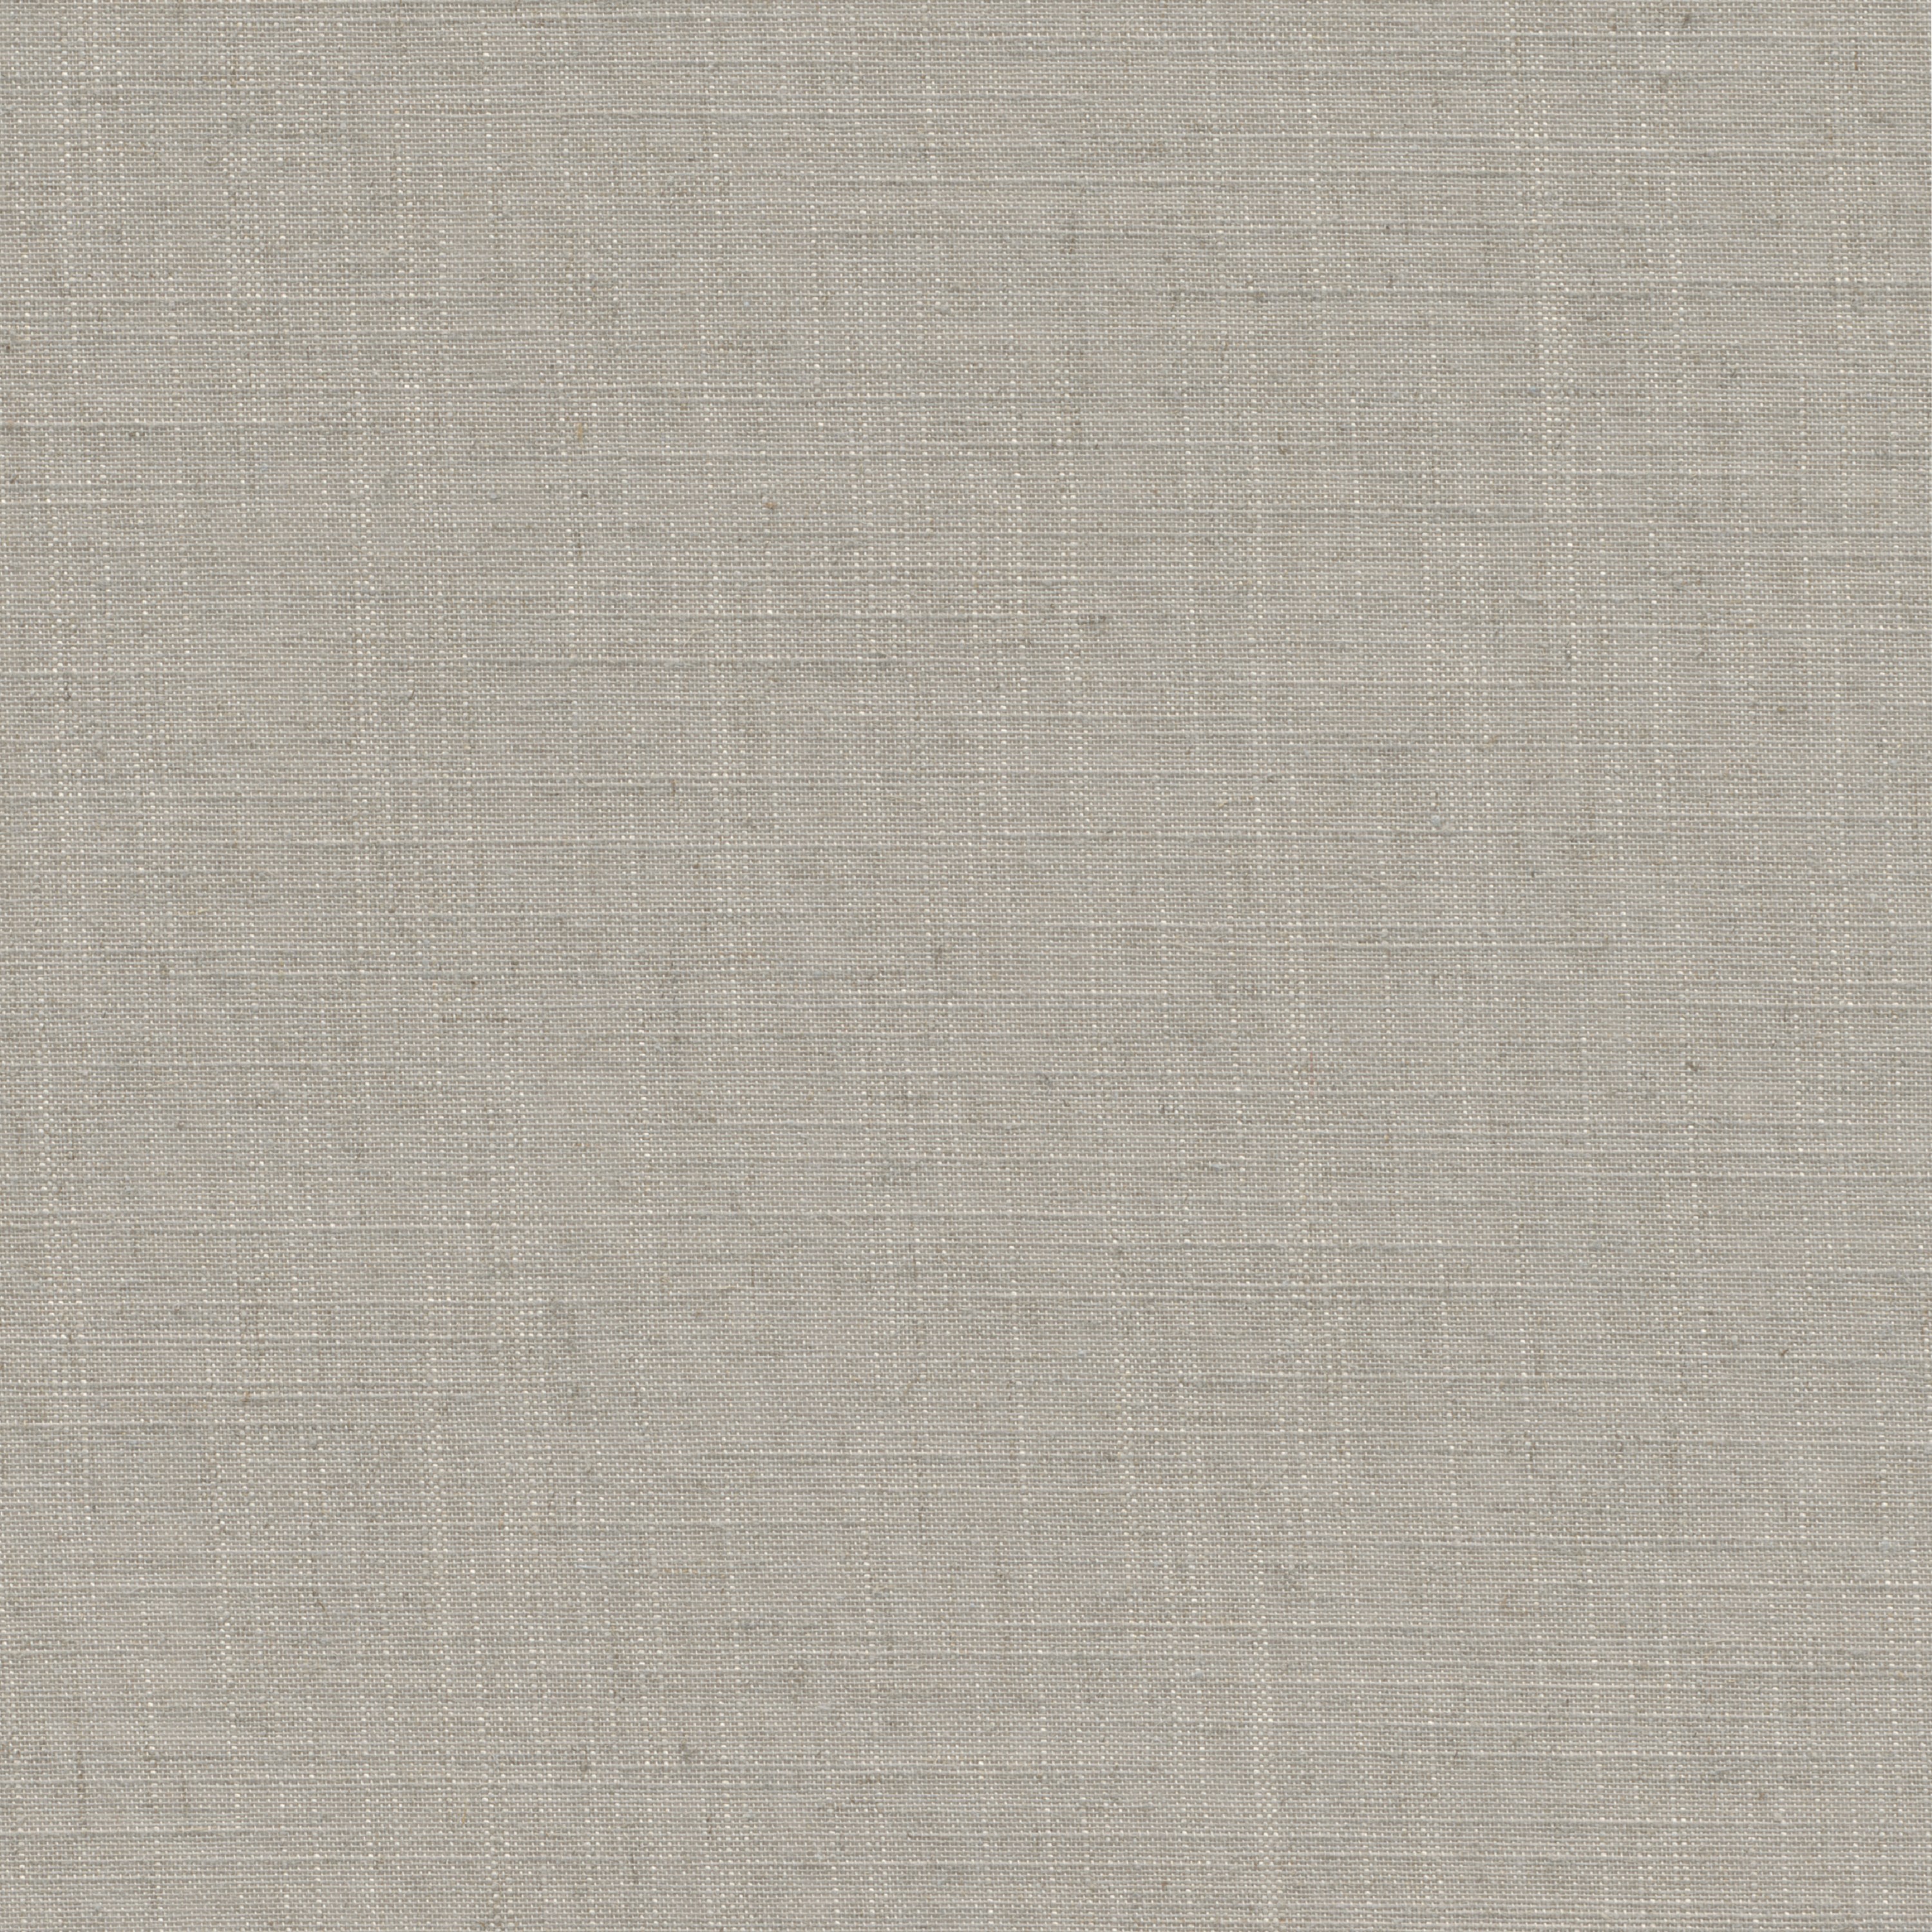 Tessuto per tende a rullo filtrante INSPIRE Brisbane beige 147 x 250 cm - 3